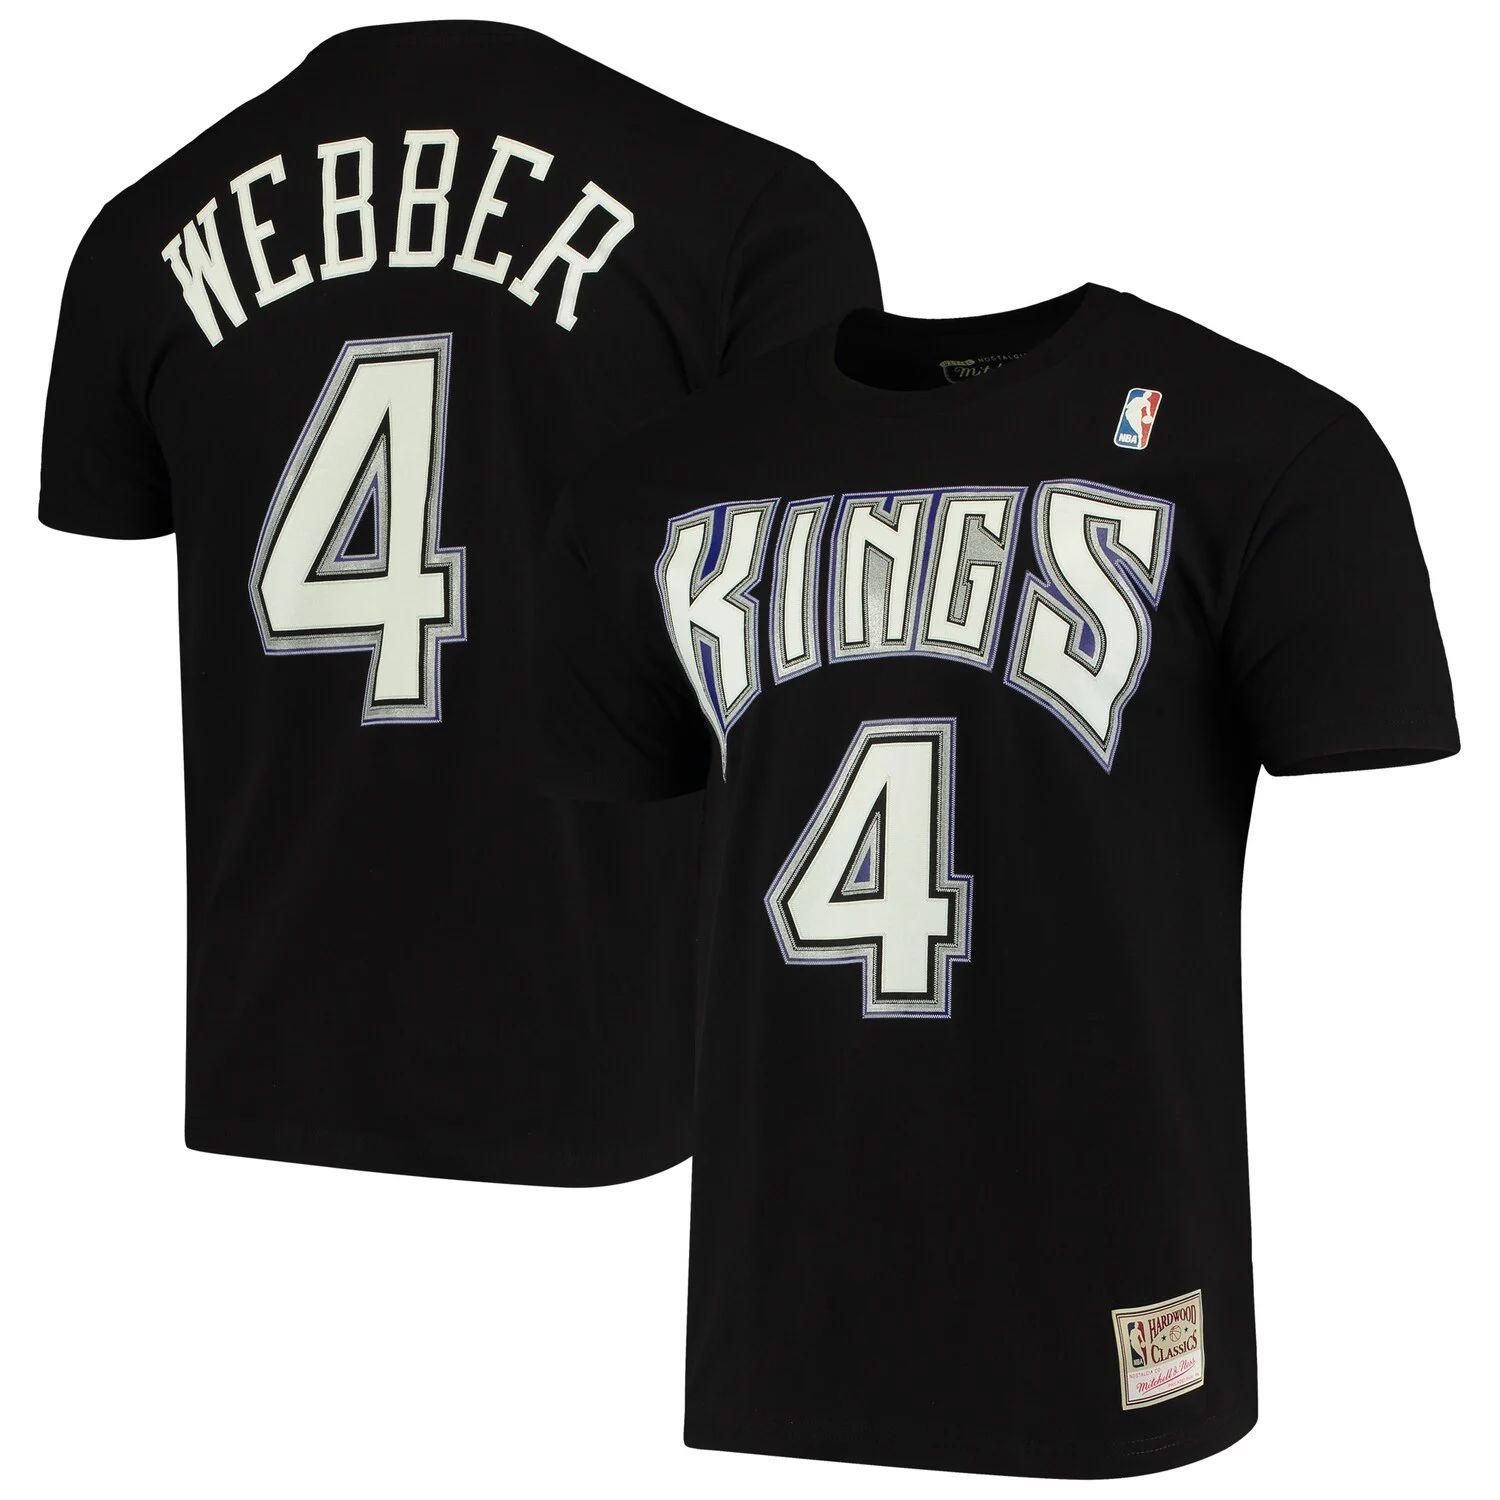 цена Мужская черная футболка Mitchell & Ness Chris Webber Sacramento Kings Hardwood Classics с именем и номером команды